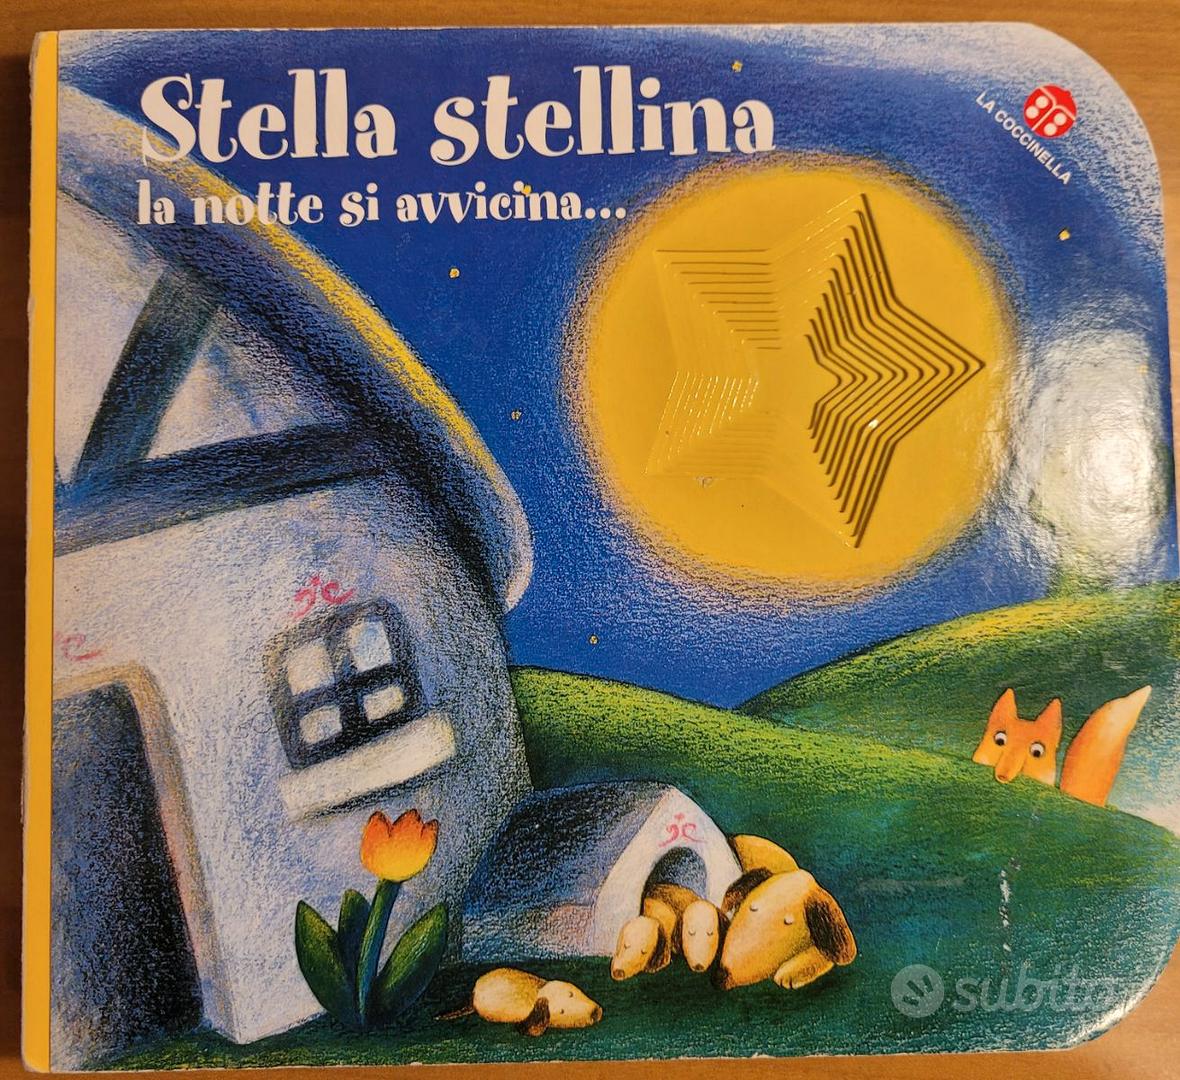 Stella stellina, la notte si avvicina